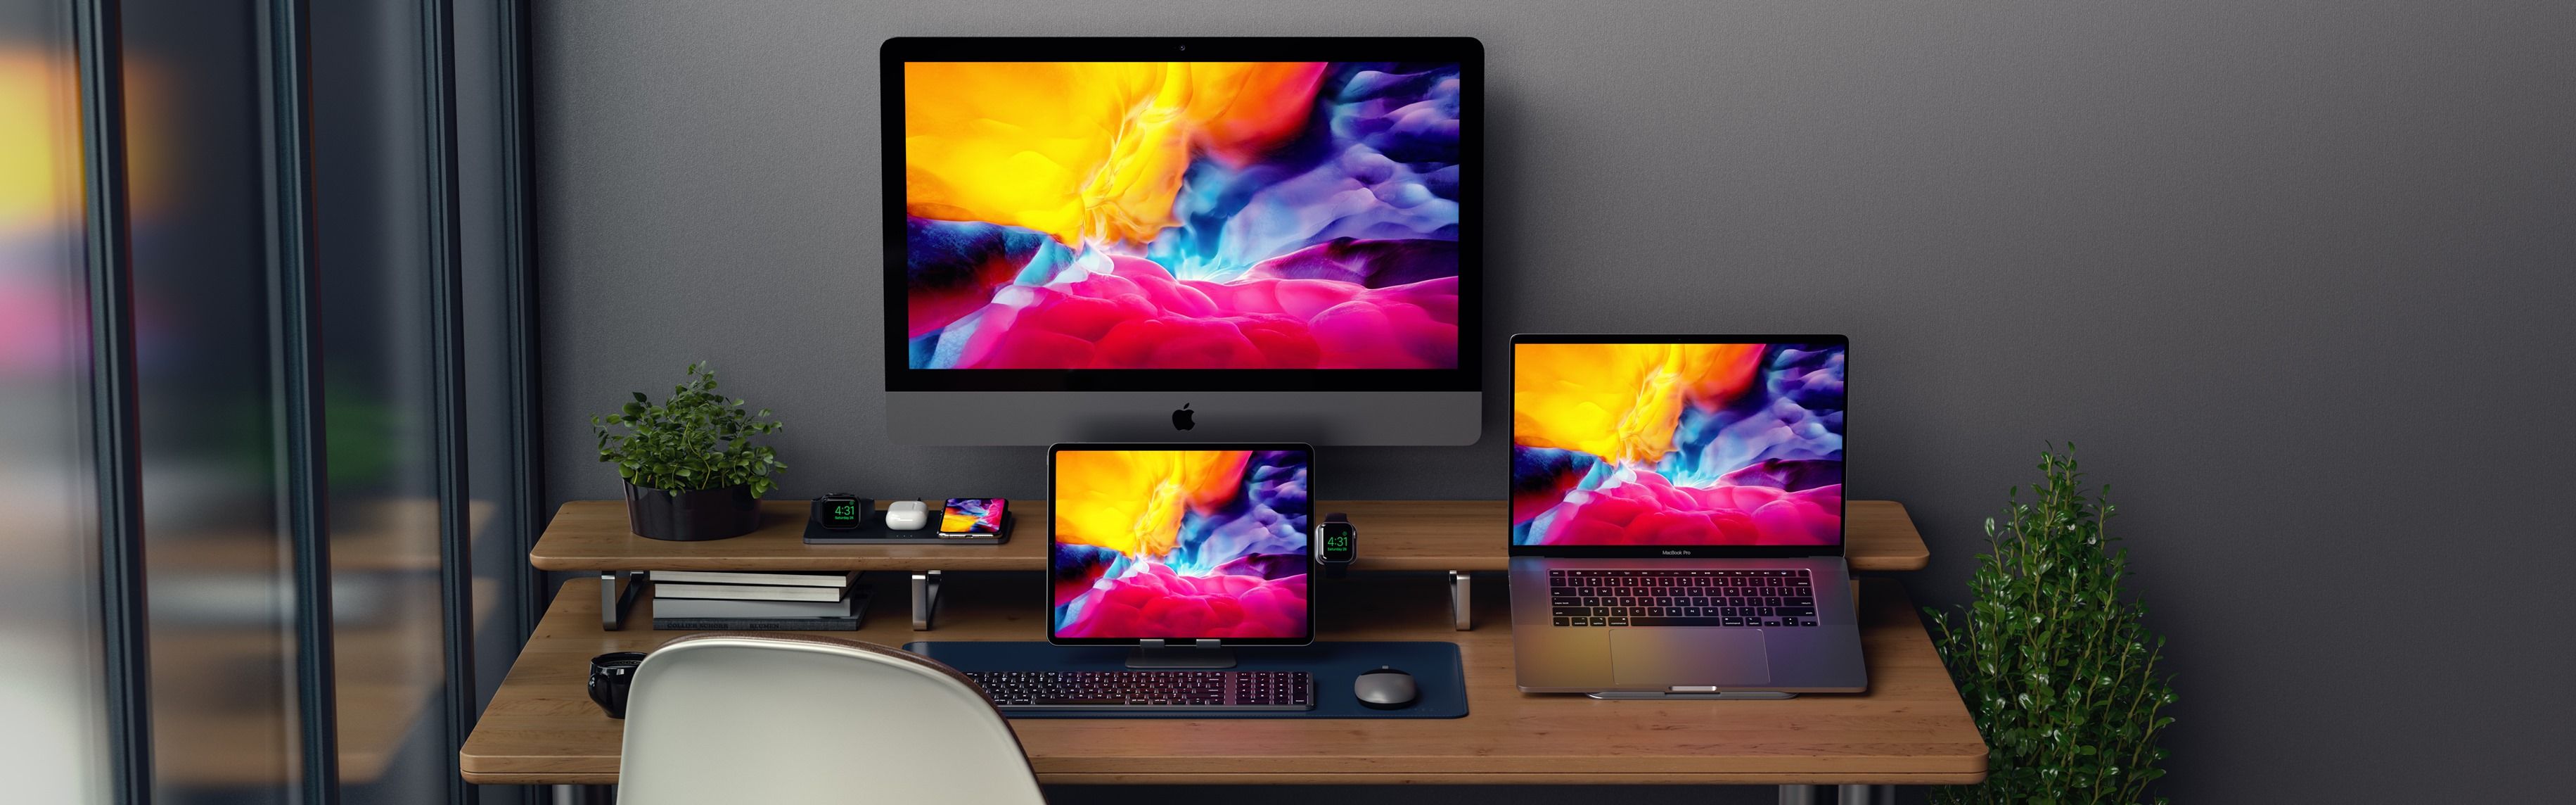 setup image for mac